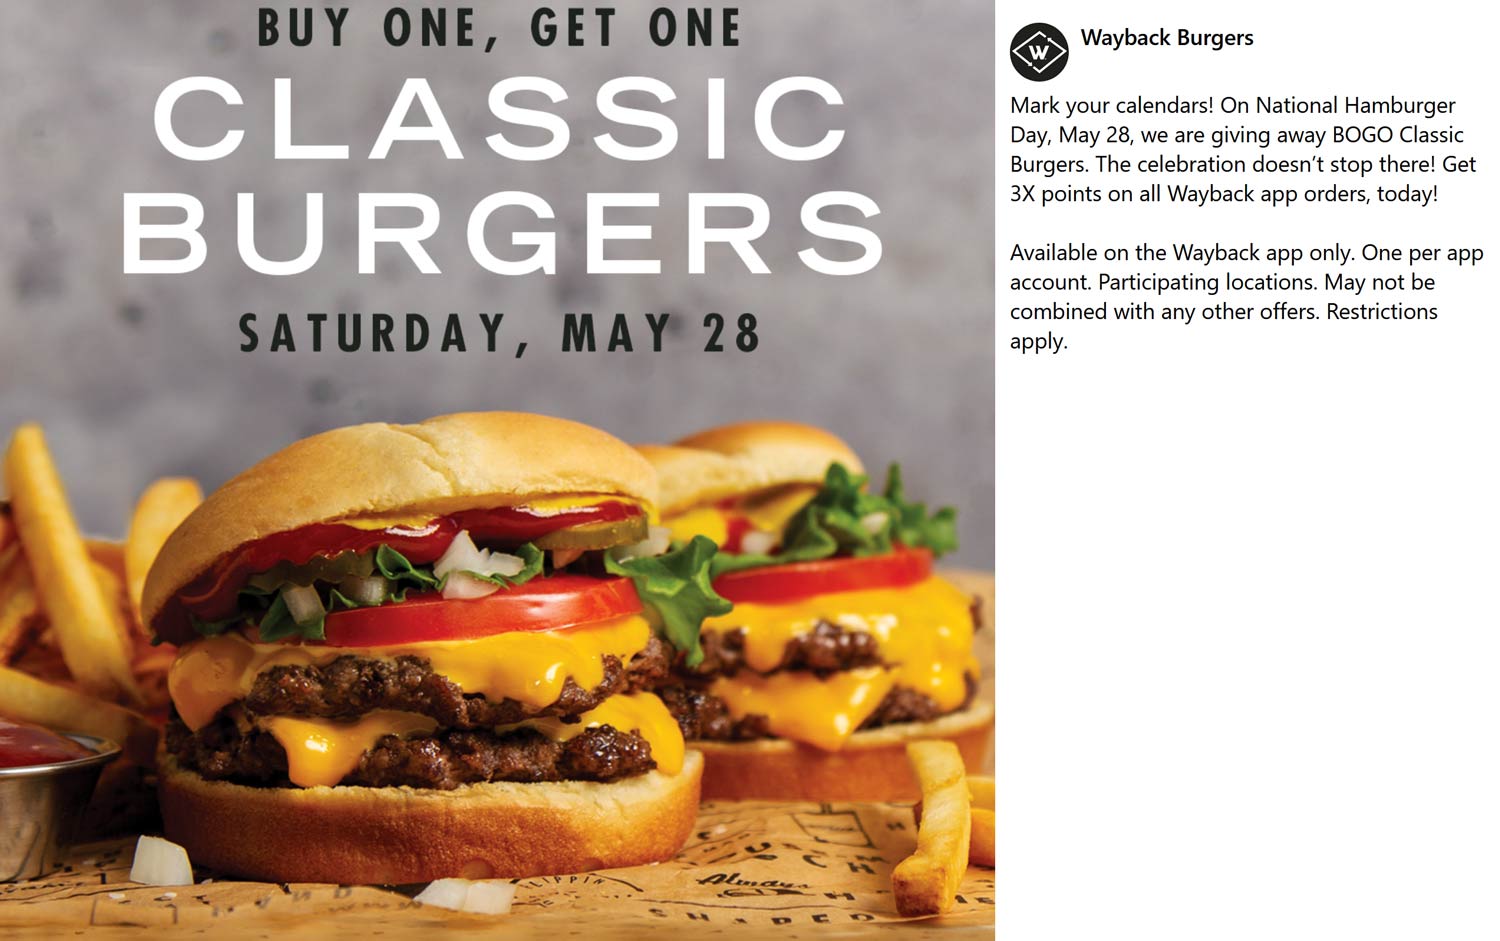 Wayback Burgers restaurants Coupon  Second classic cheeseburger free Saturday at Wayback Burgers #waybackburgers 